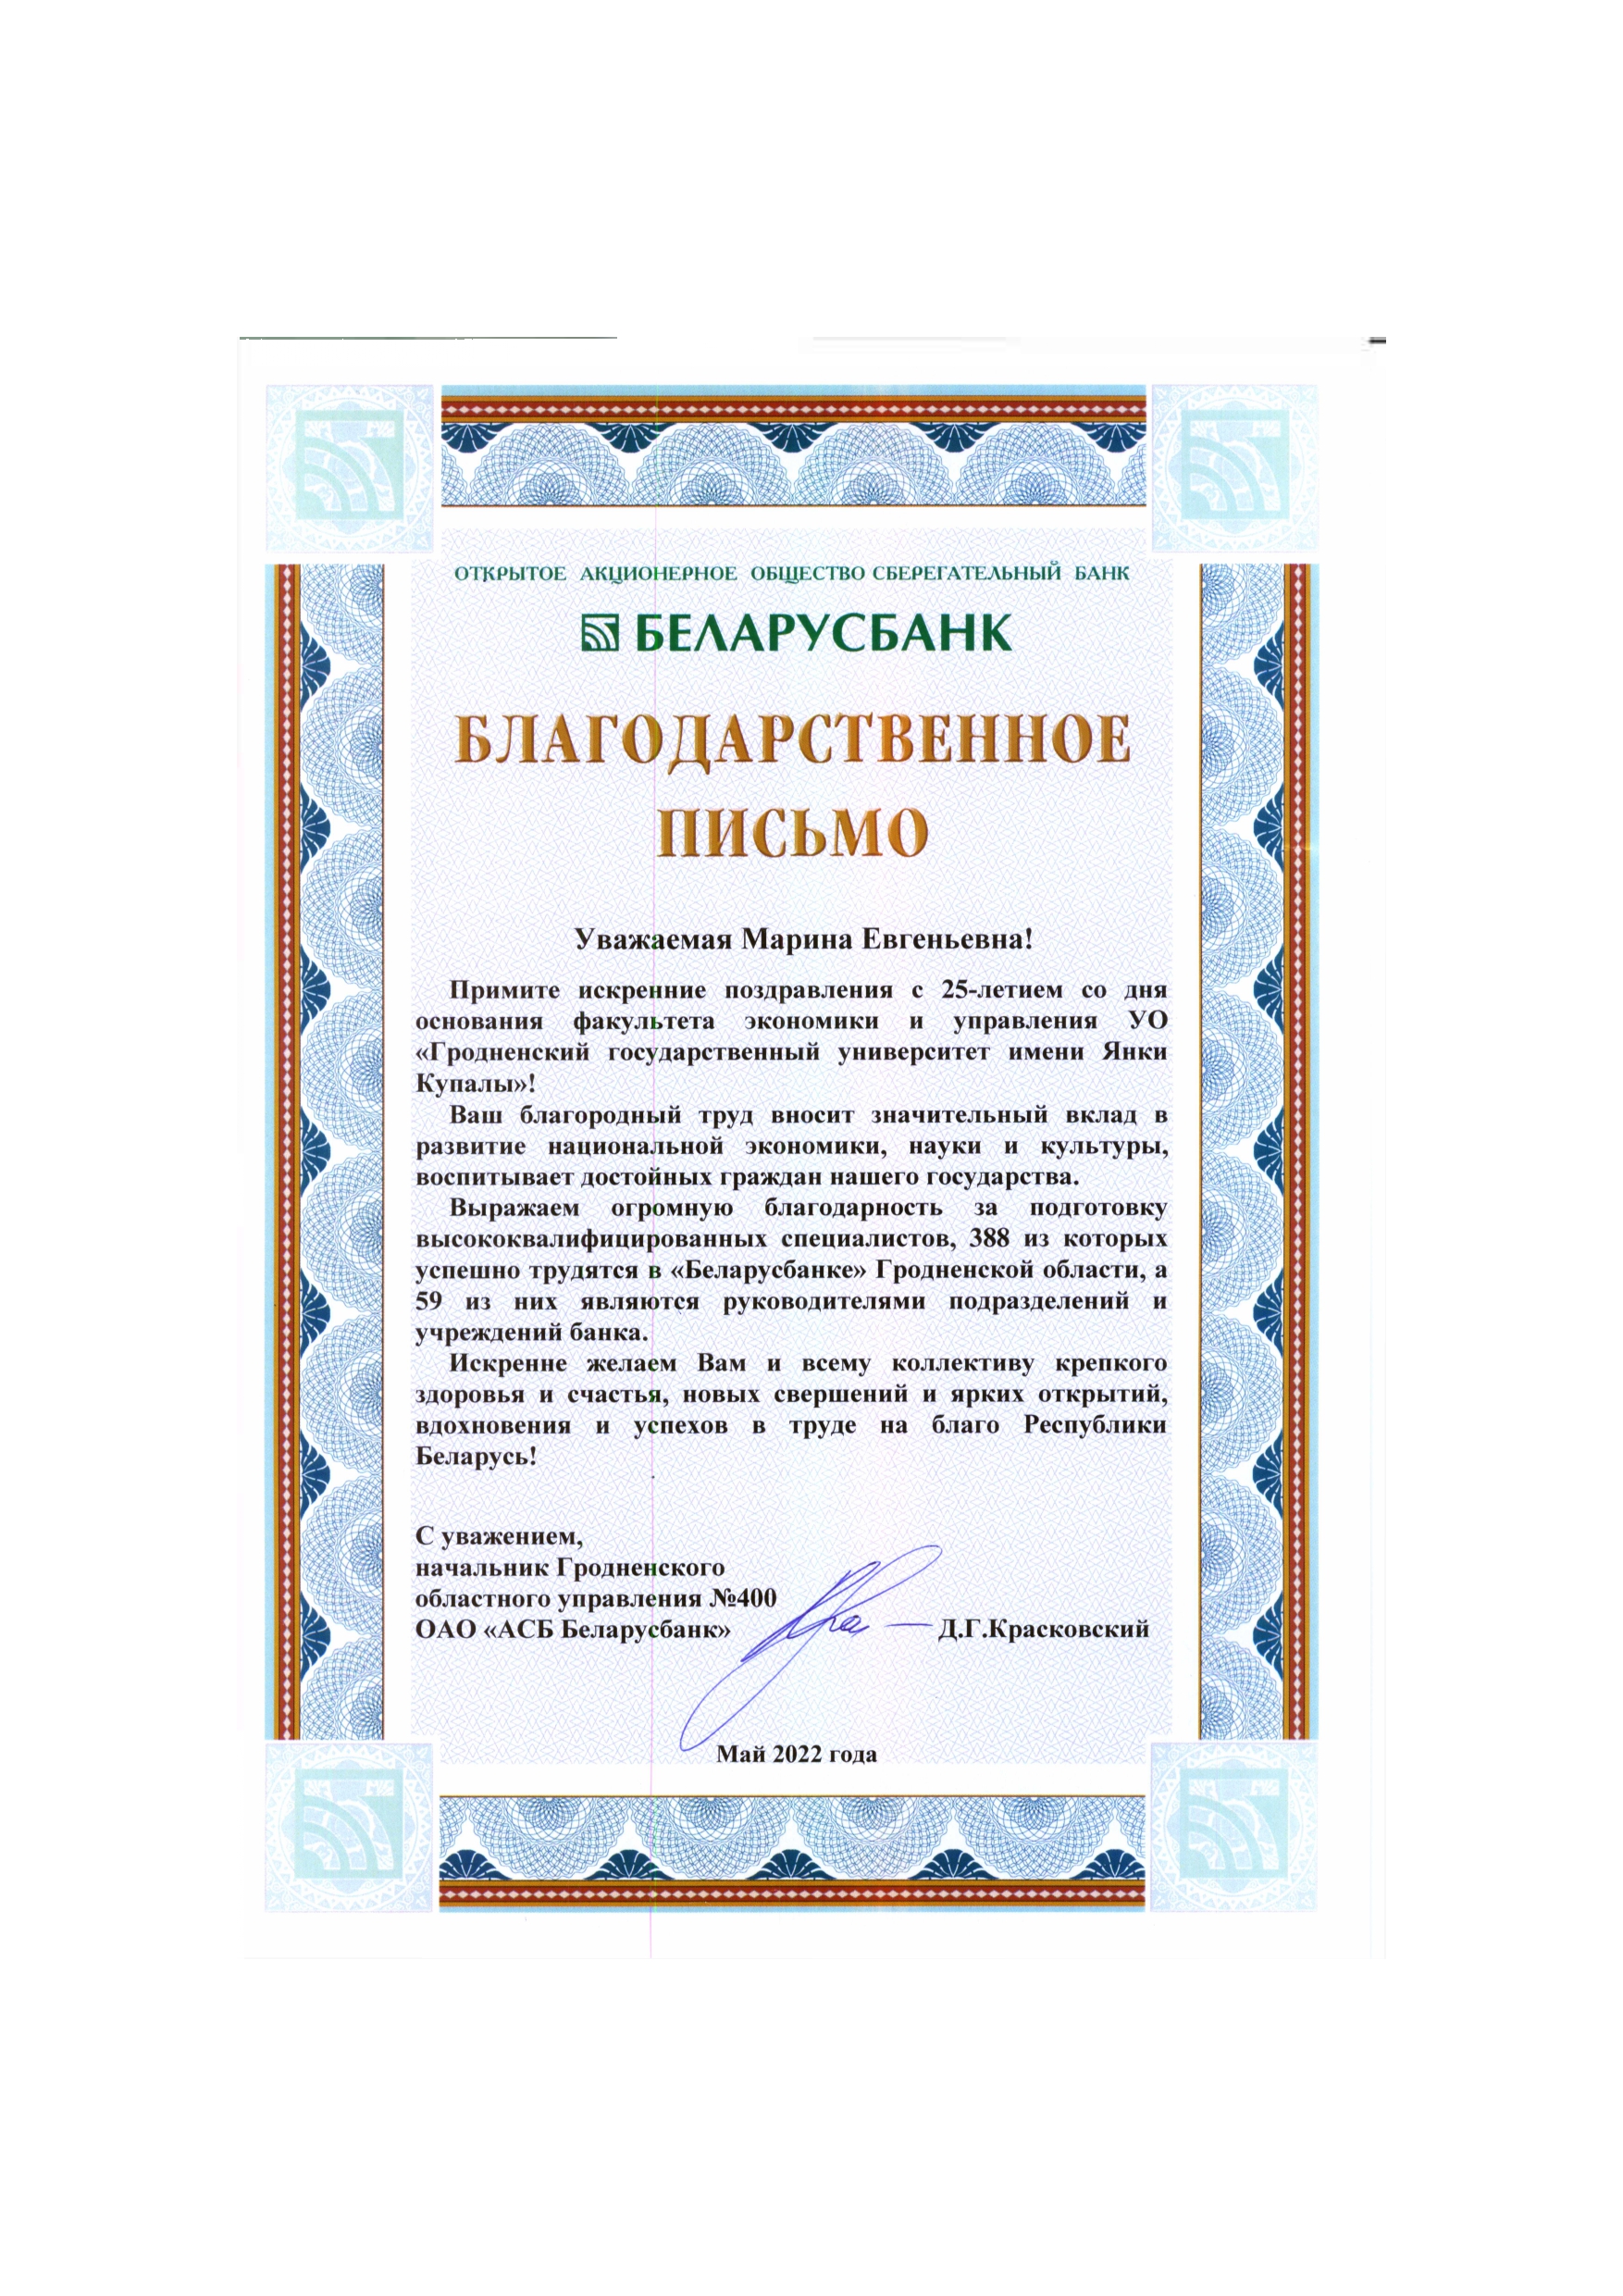 письмо-поздравление Беларусбанк Красковский_page-0001